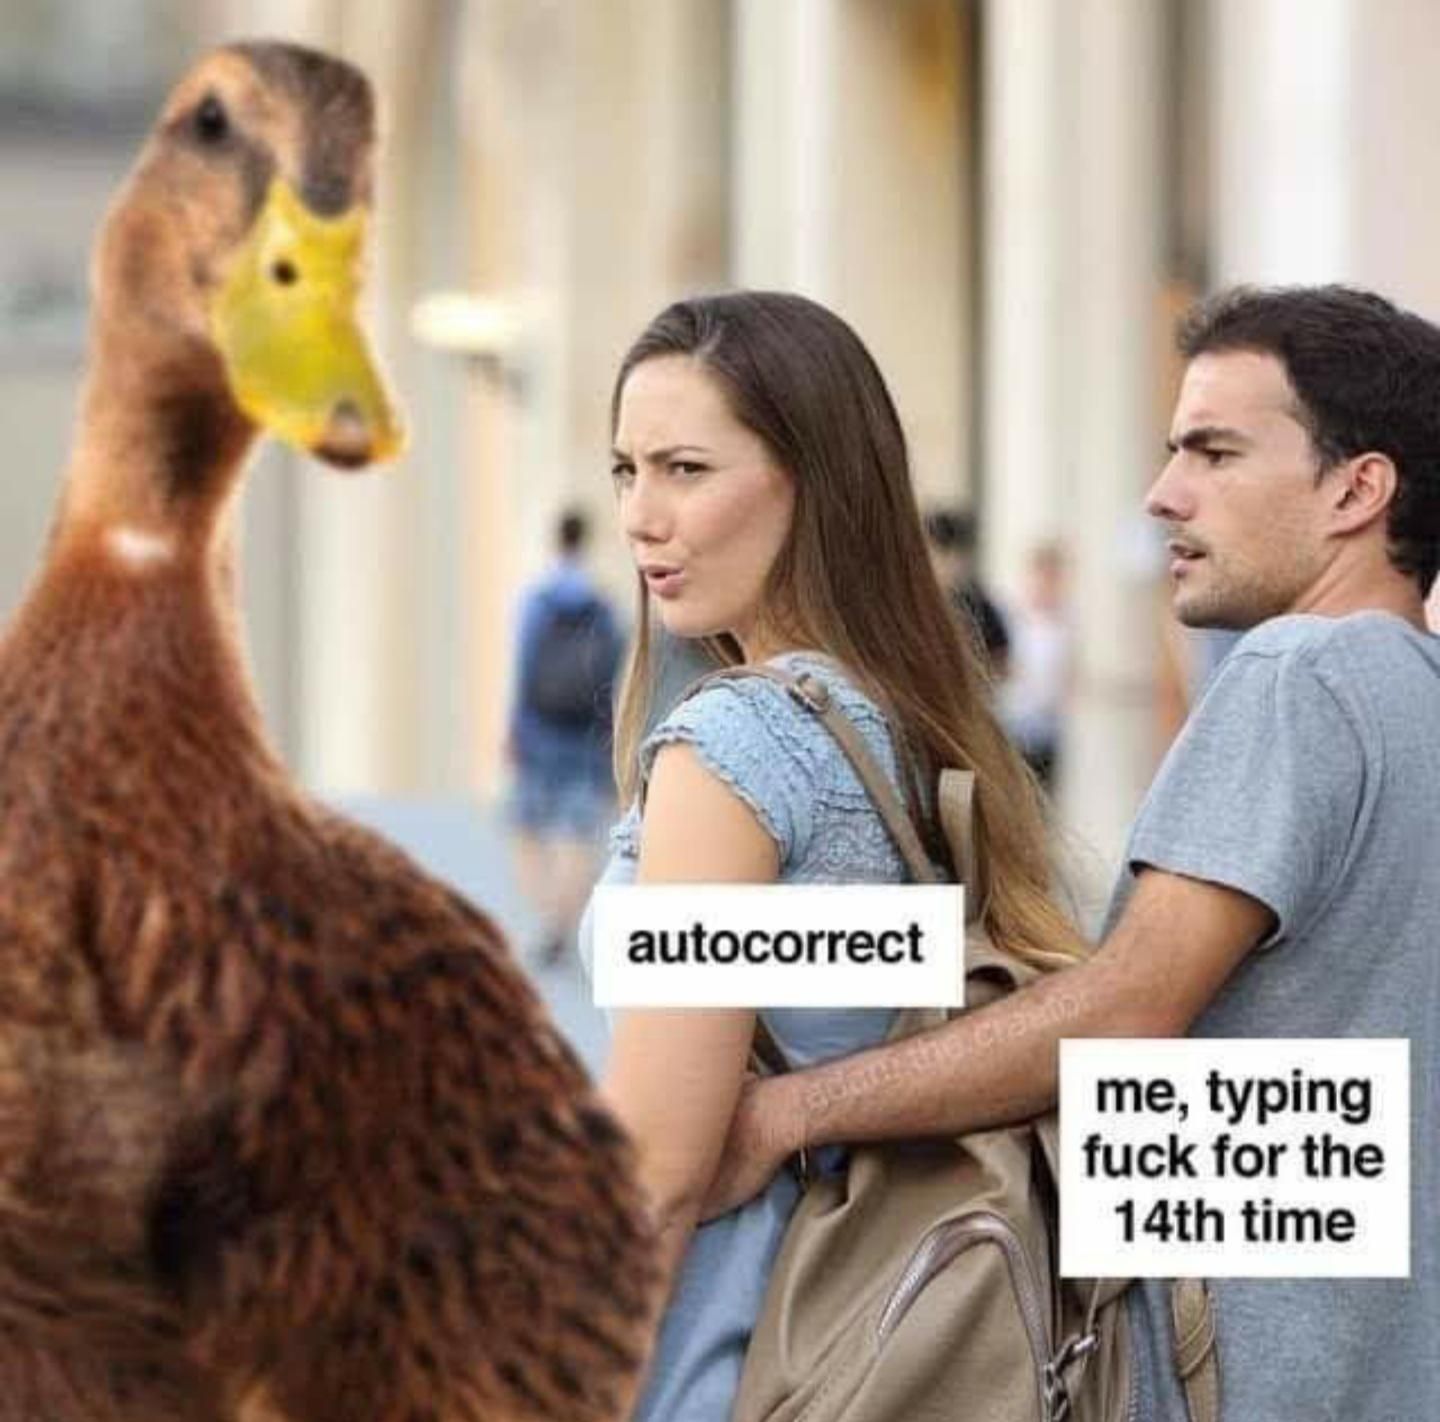 Duck autocorrect